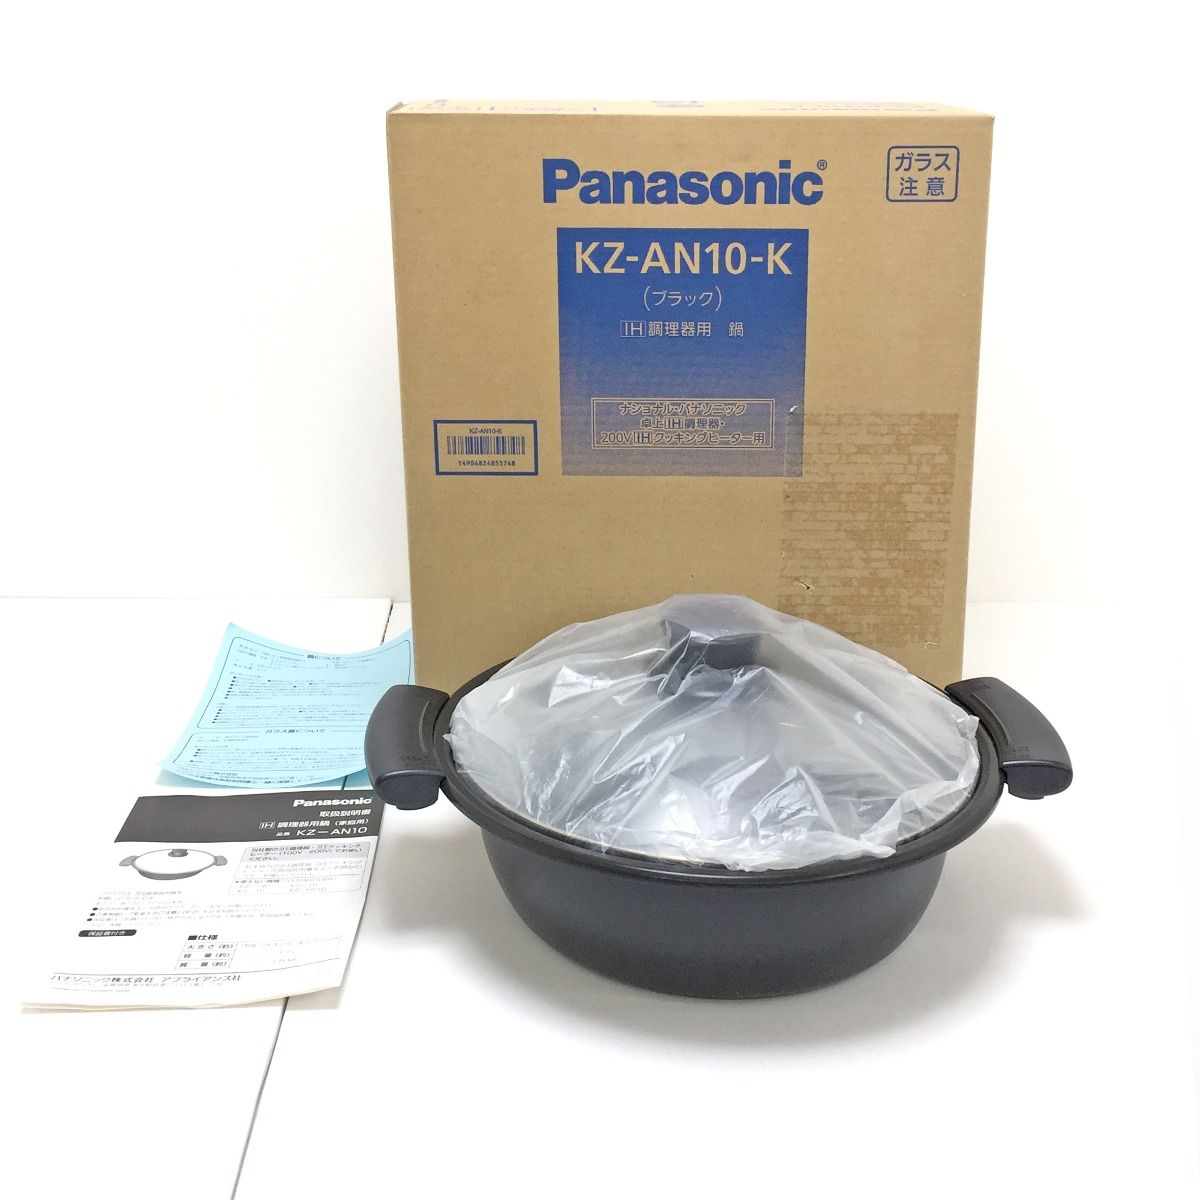 パナソニック(Panasonic) KZ-AN10-K(ブラック) IH調理器用鍋